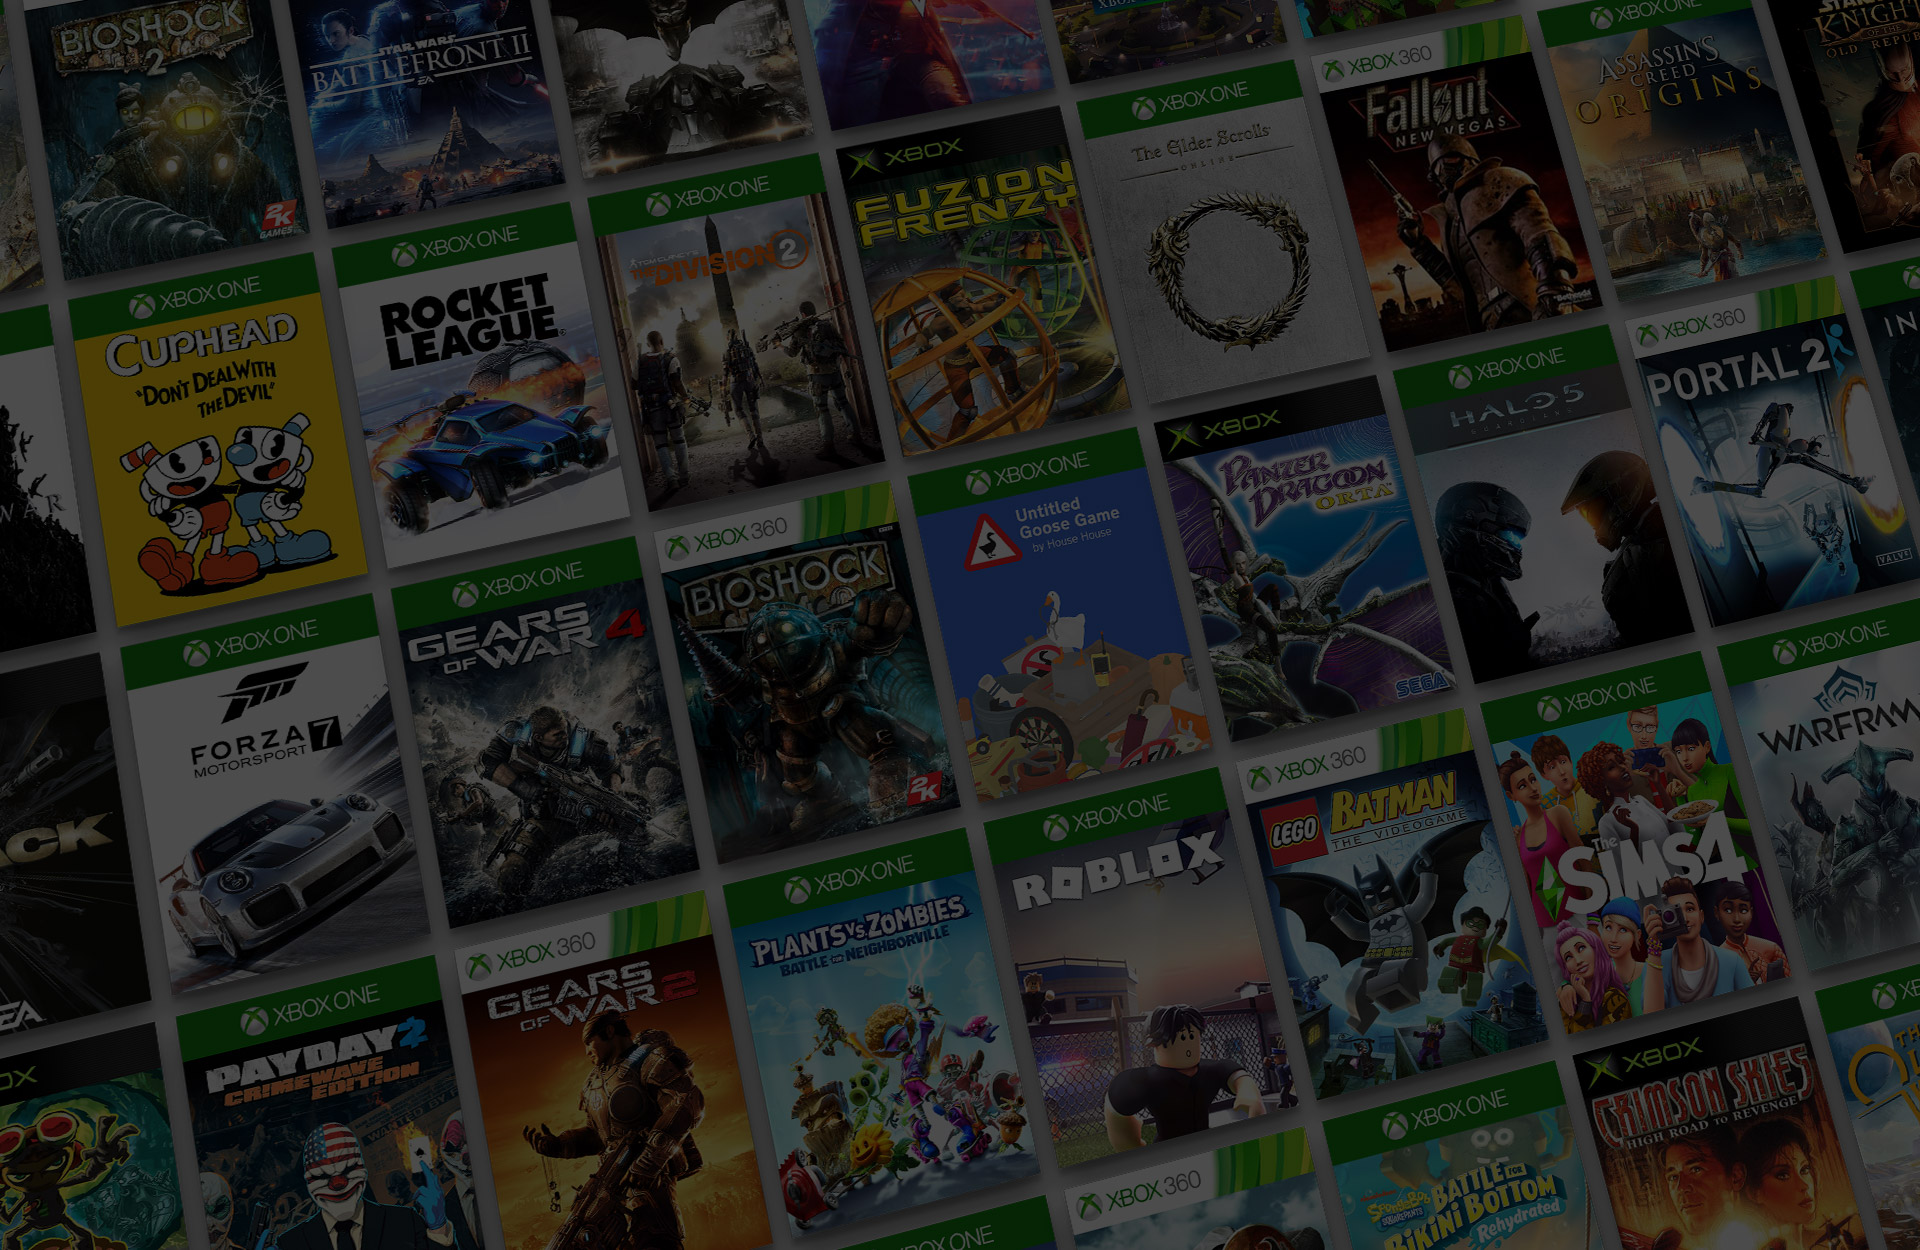 Mosaic of Xbox backward compatible game titles